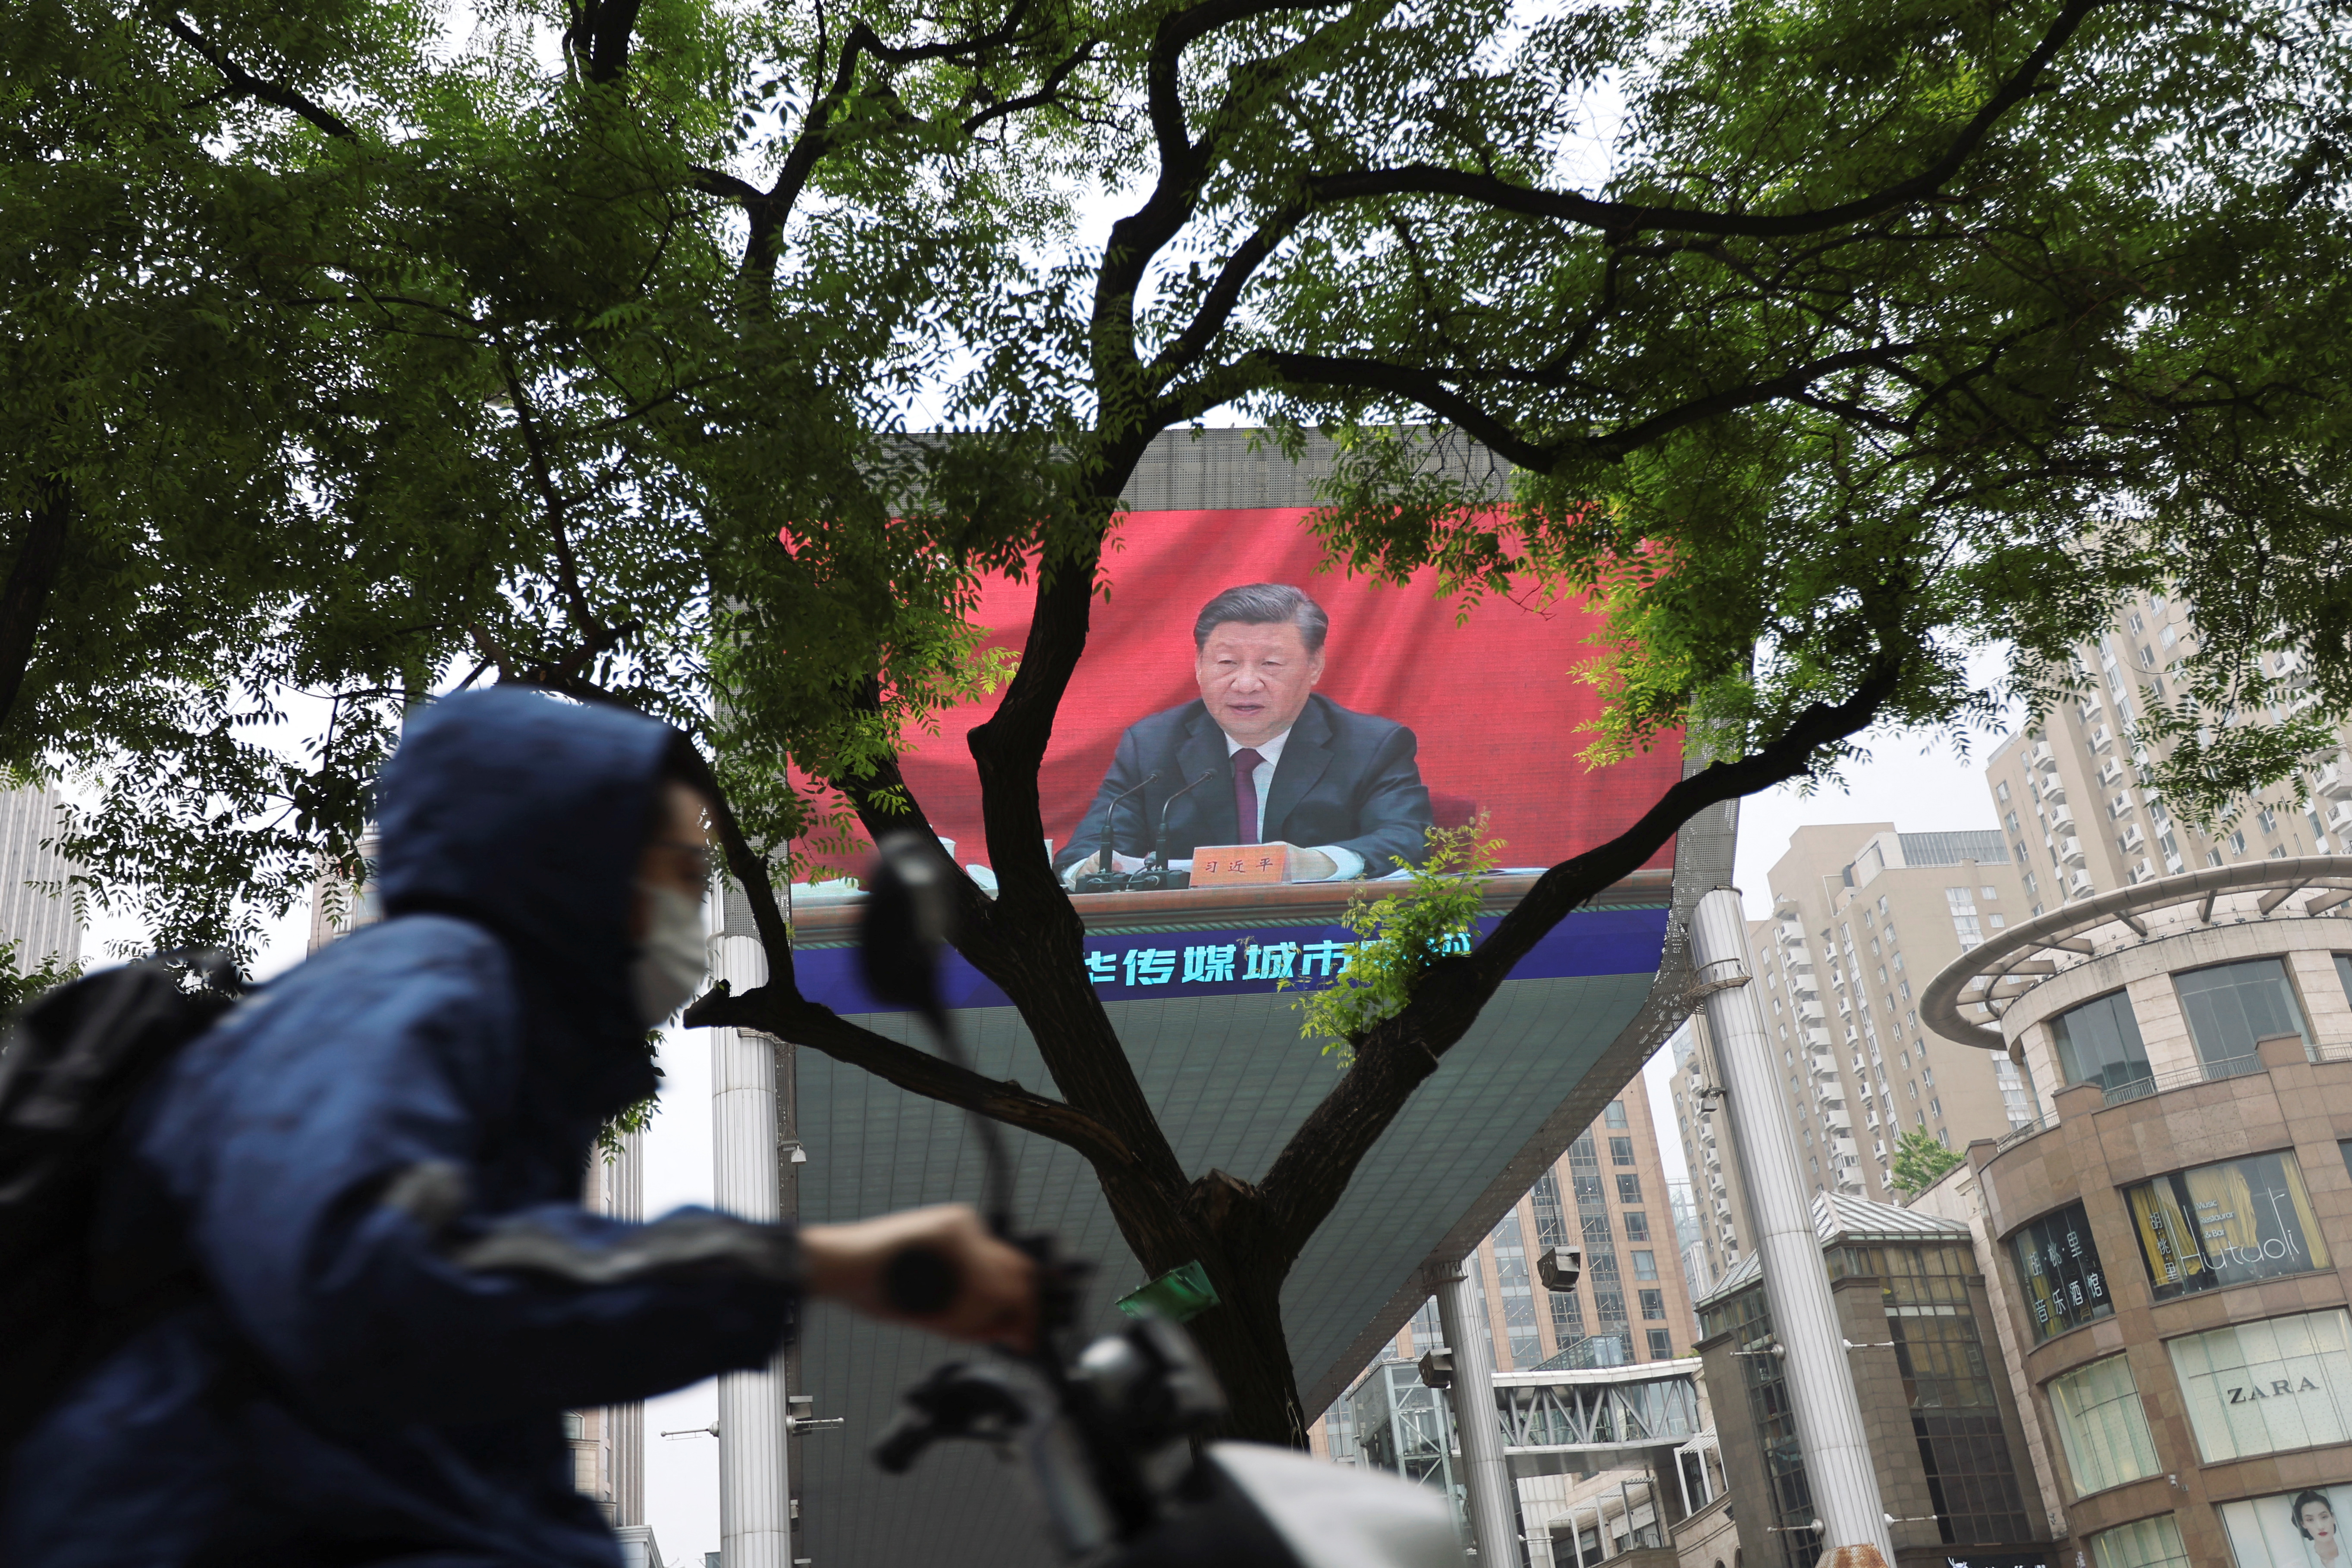 Un hombre con una máscara facial pasa junto a una pantalla gigante que muestra al jefe del régimen chino Xi Jinping hablando en un acto de celebración del centenario de la fundación de la Liga de la Juventud Comunista China, en medio del brote de la enfermedad del coronavirus (COVID-19) en Beijing (Reuters)